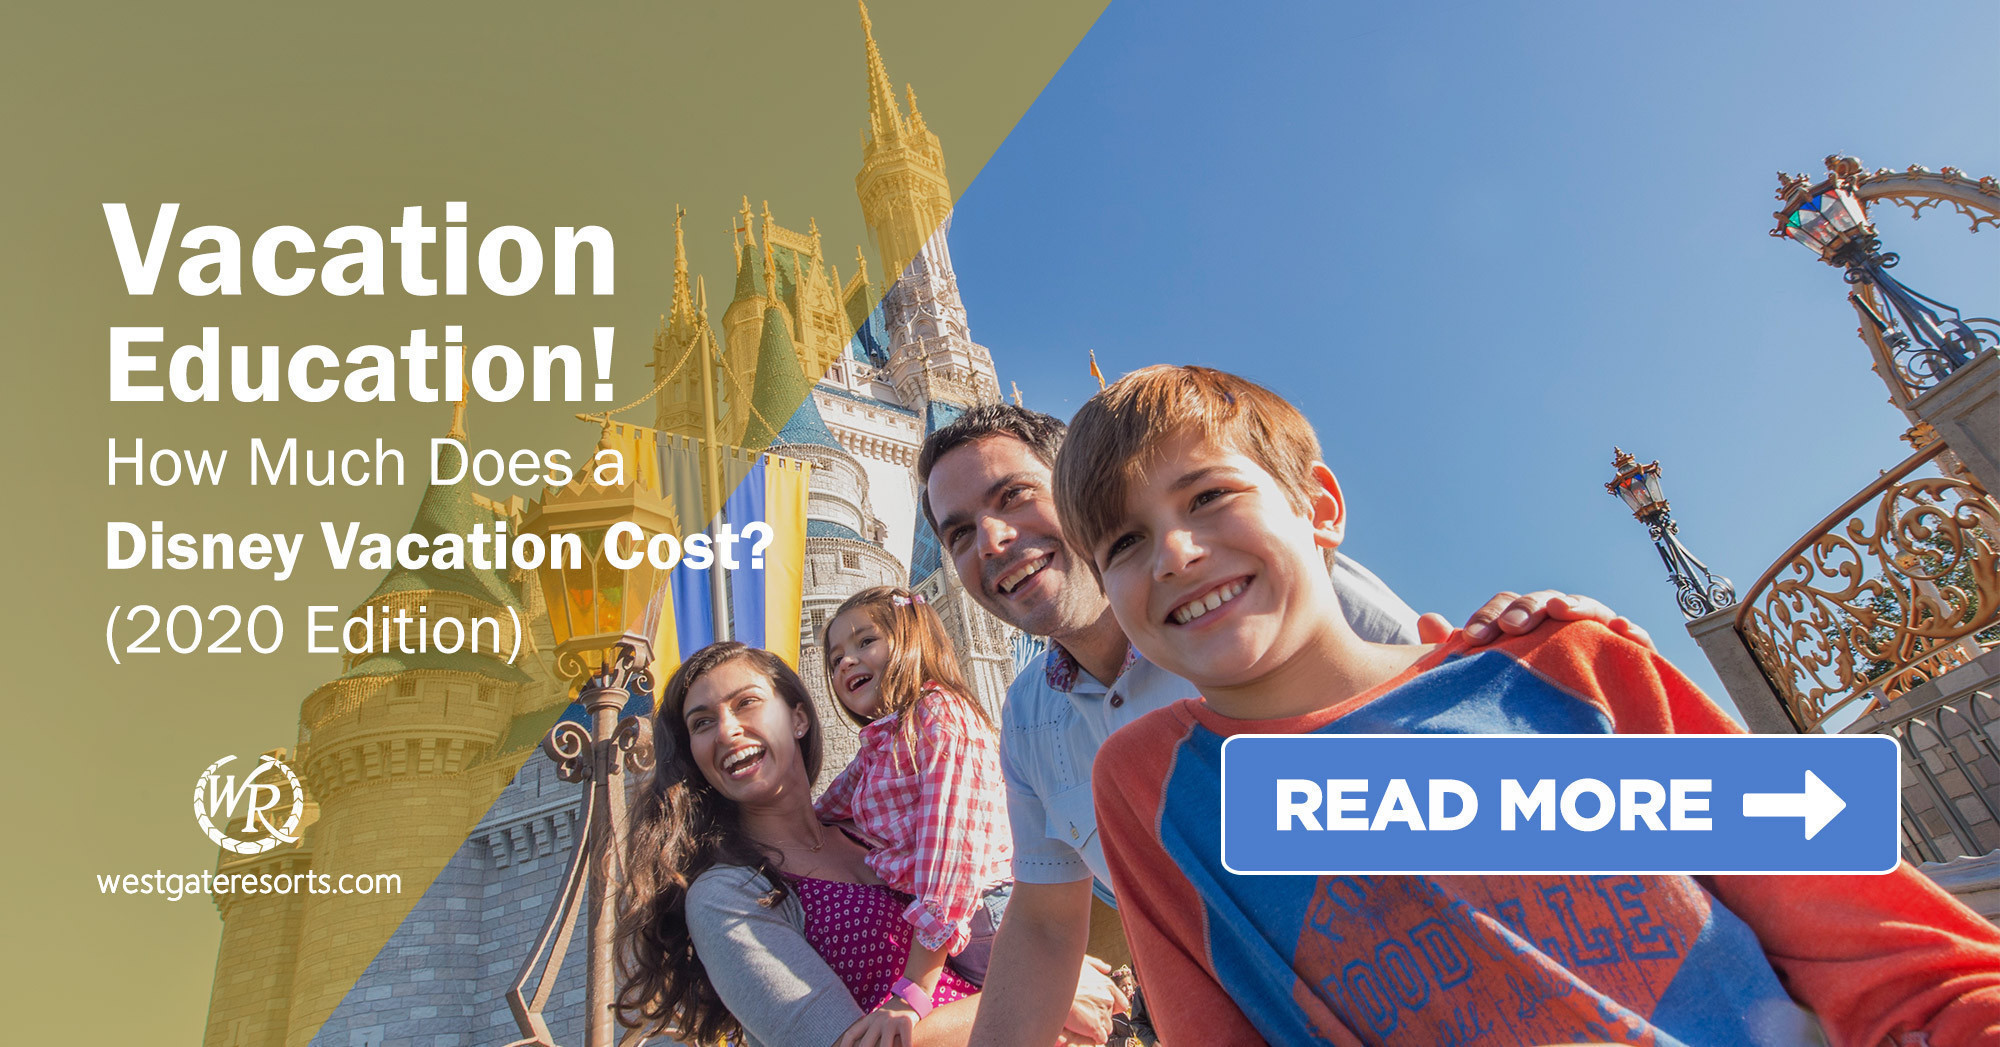 ¡Educación de vacaciones! ¿Cuánto cuestan unas vacaciones en Disney (edición 2020)?